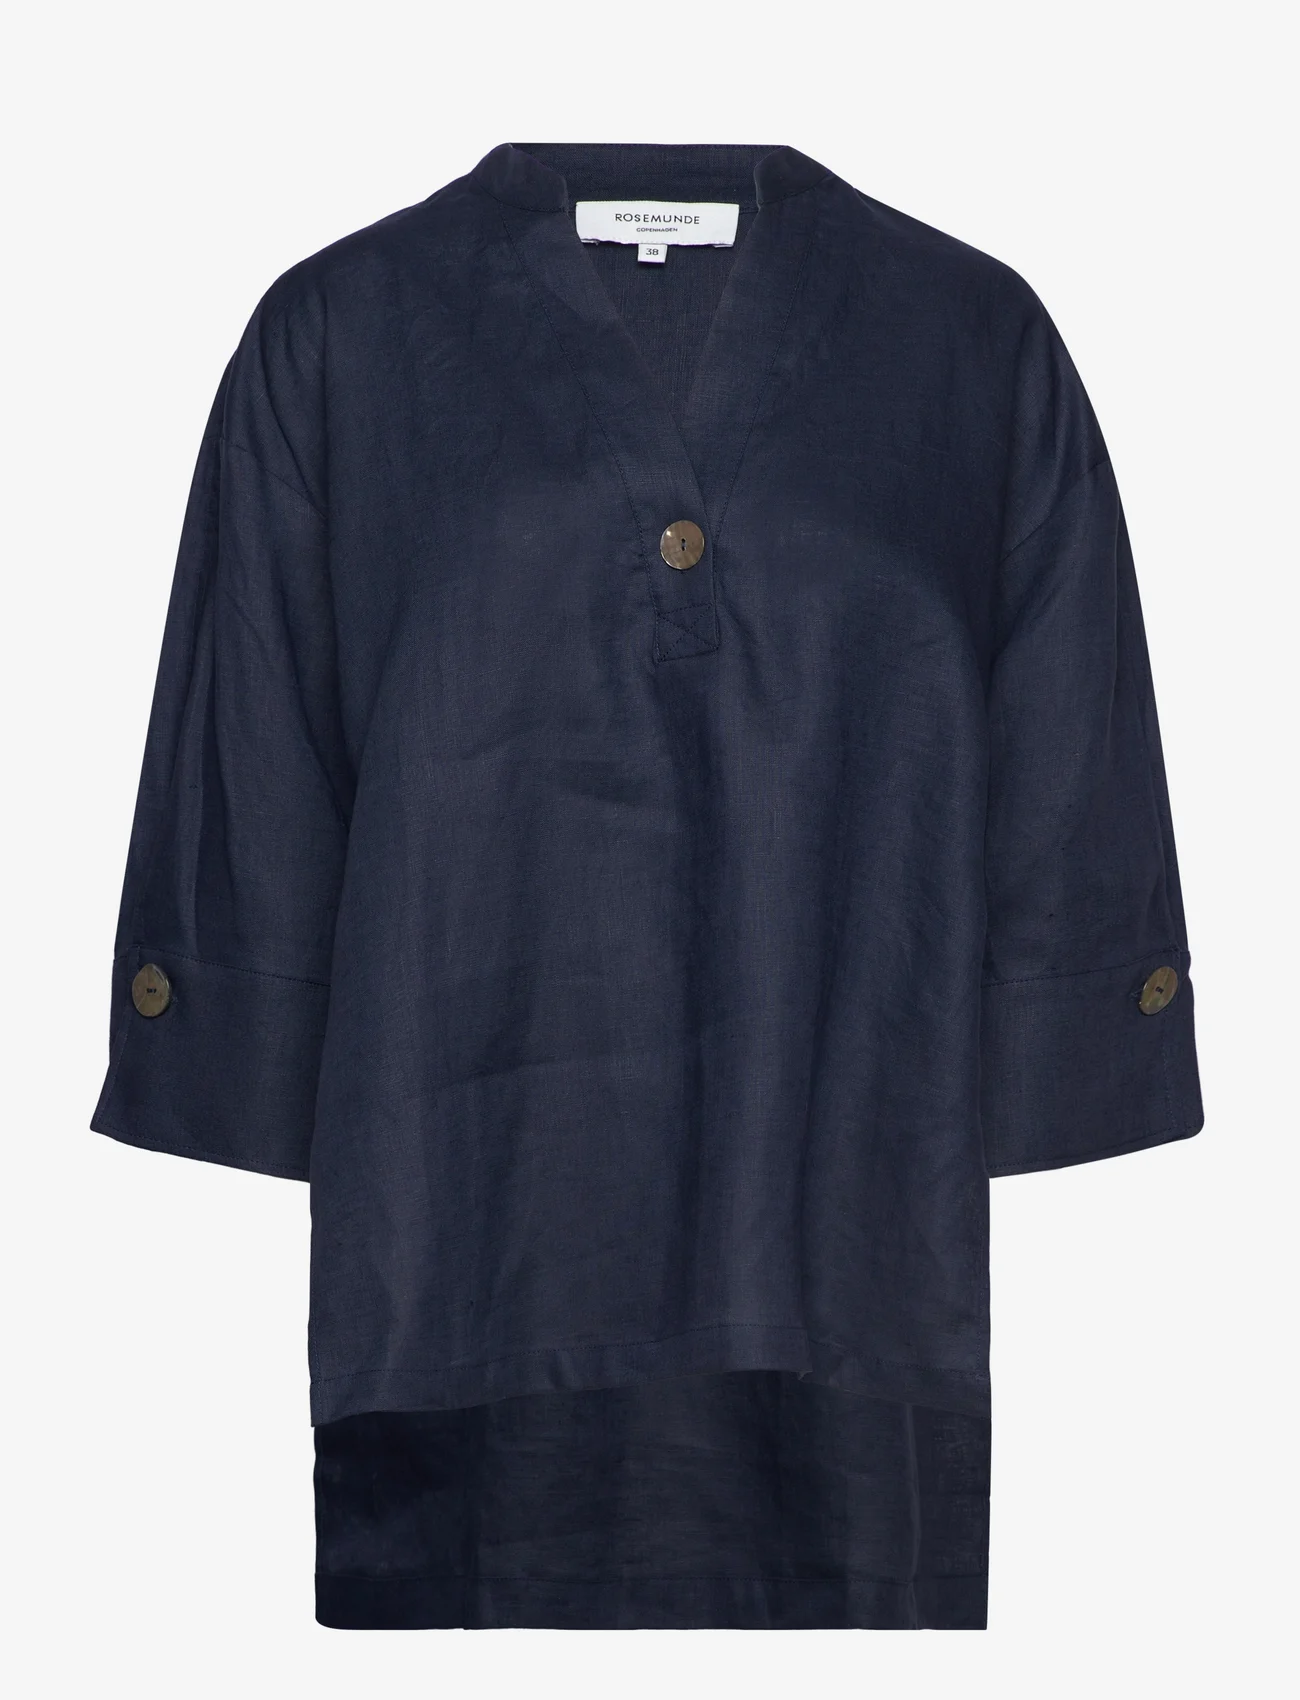 Rosemunde - Linen blouse - linskjorter - navy - 0